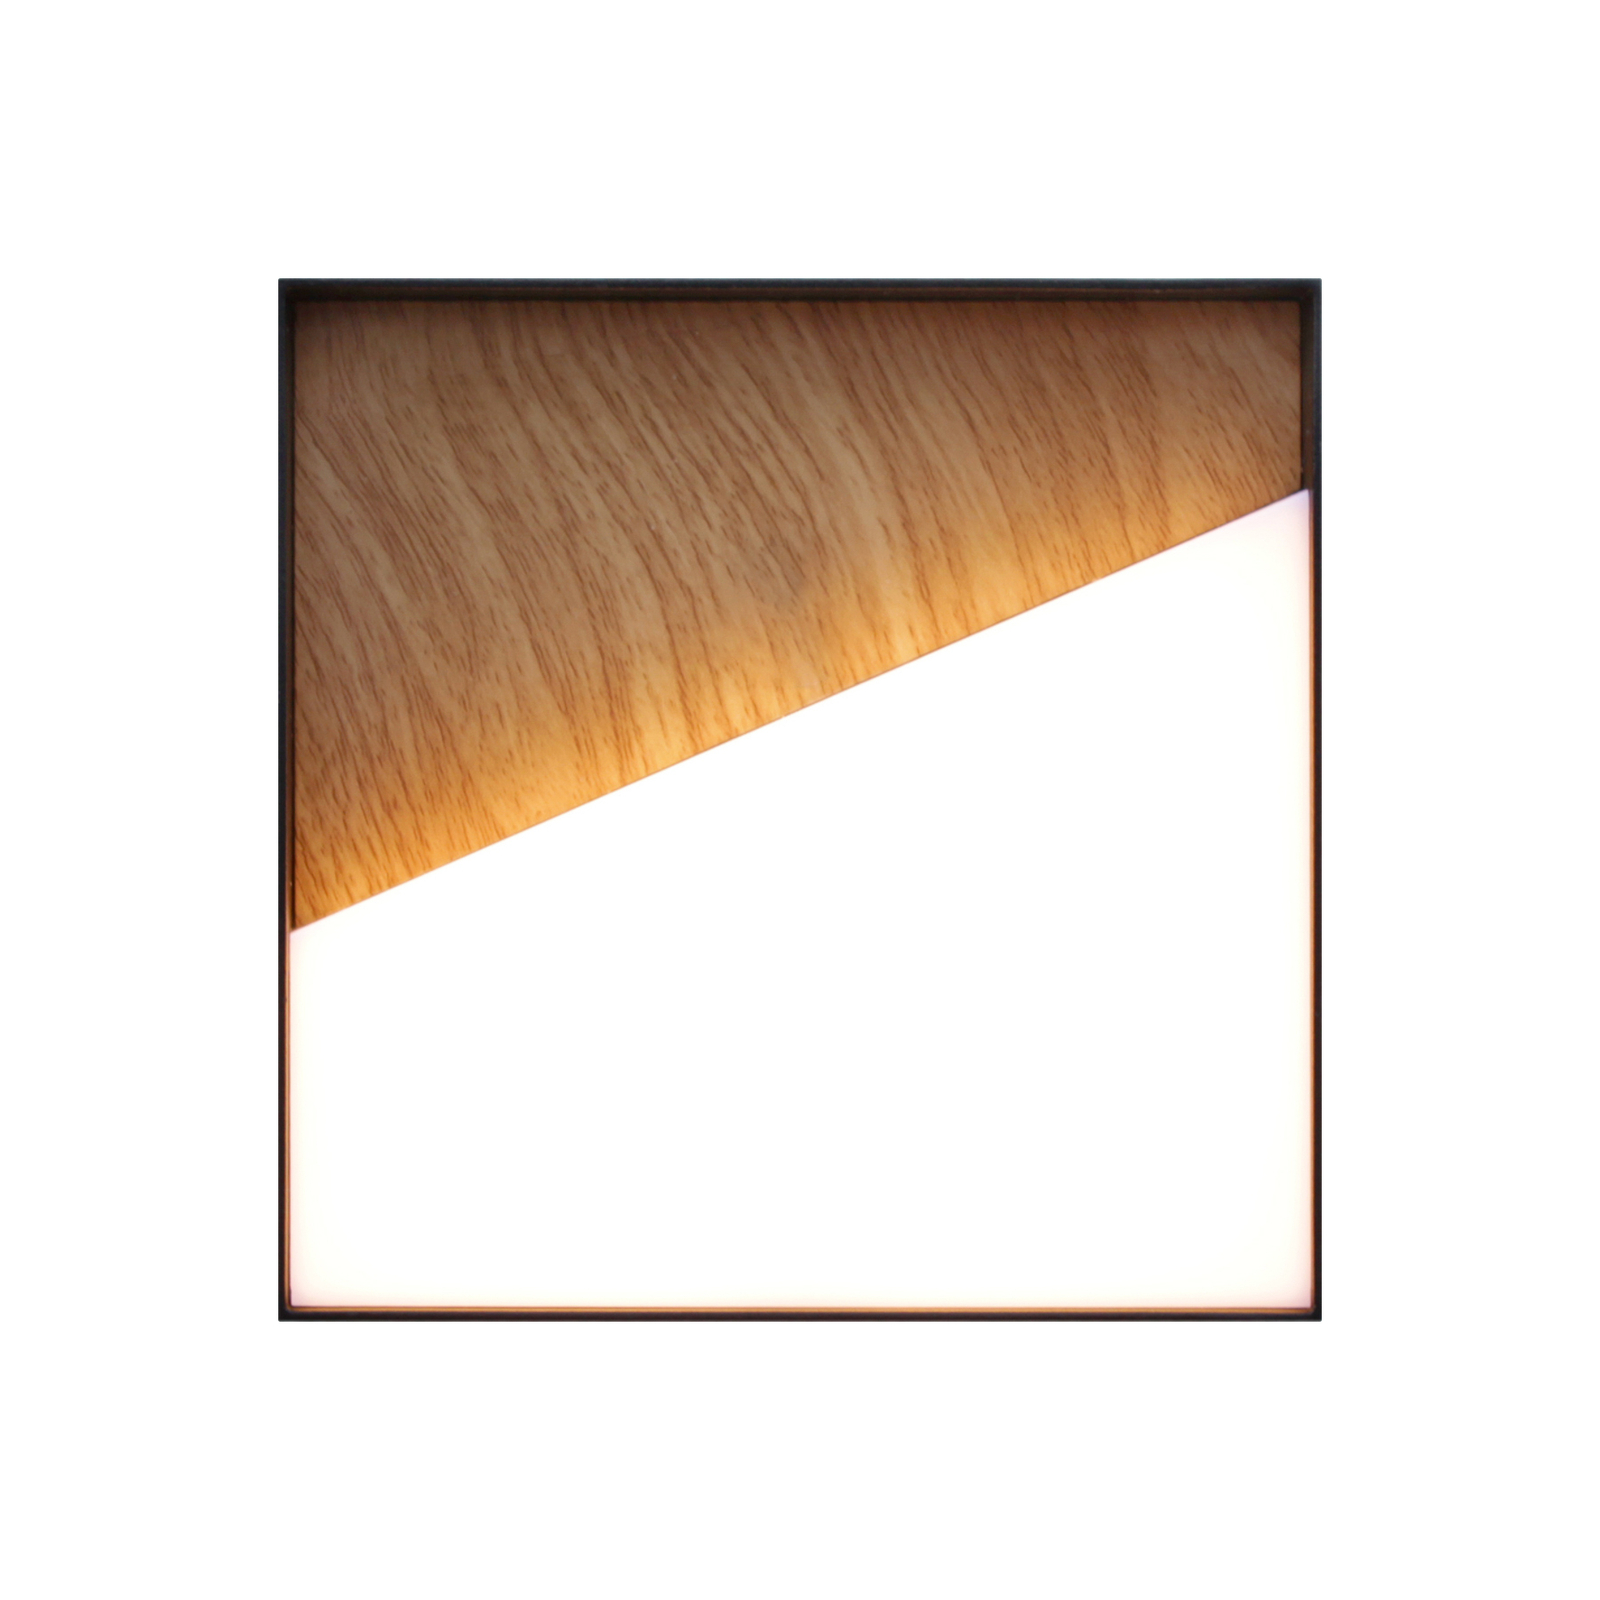 LED dobíjecí venkovní nástěnné světlo Meg, barva dřeva, 15 x 15 cm